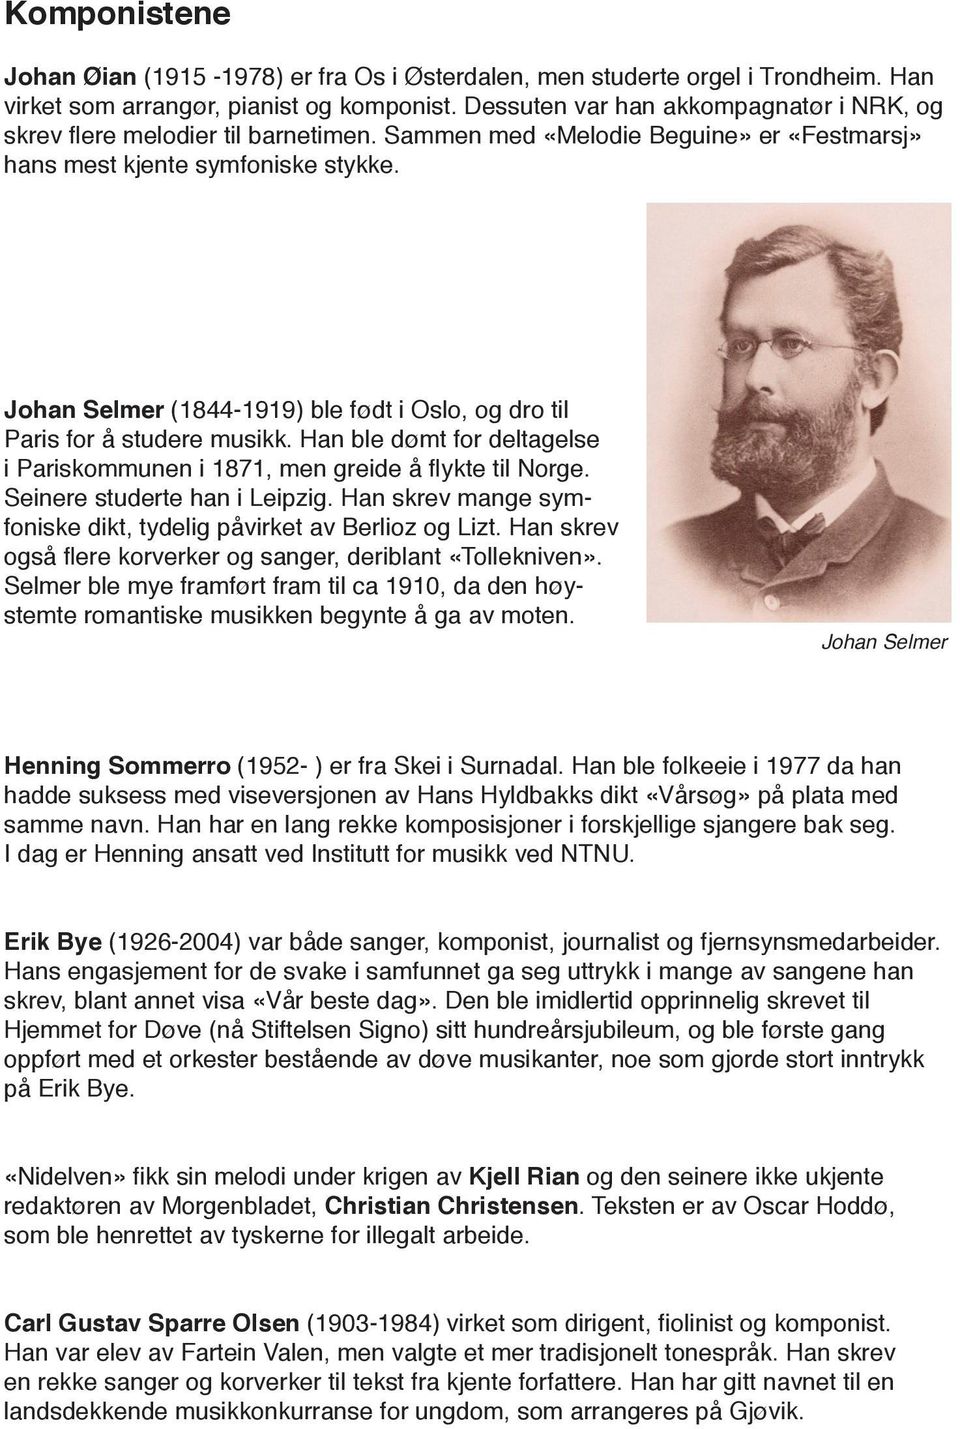 Johan Selmer (1844-1919) ble født i Oslo, og dro til Paris for å studere musikk. Han ble dømt for deltagelse i Pariskommunen i 1871, men greide å flykte til Norge. Seinere studerte han i Leipzig.